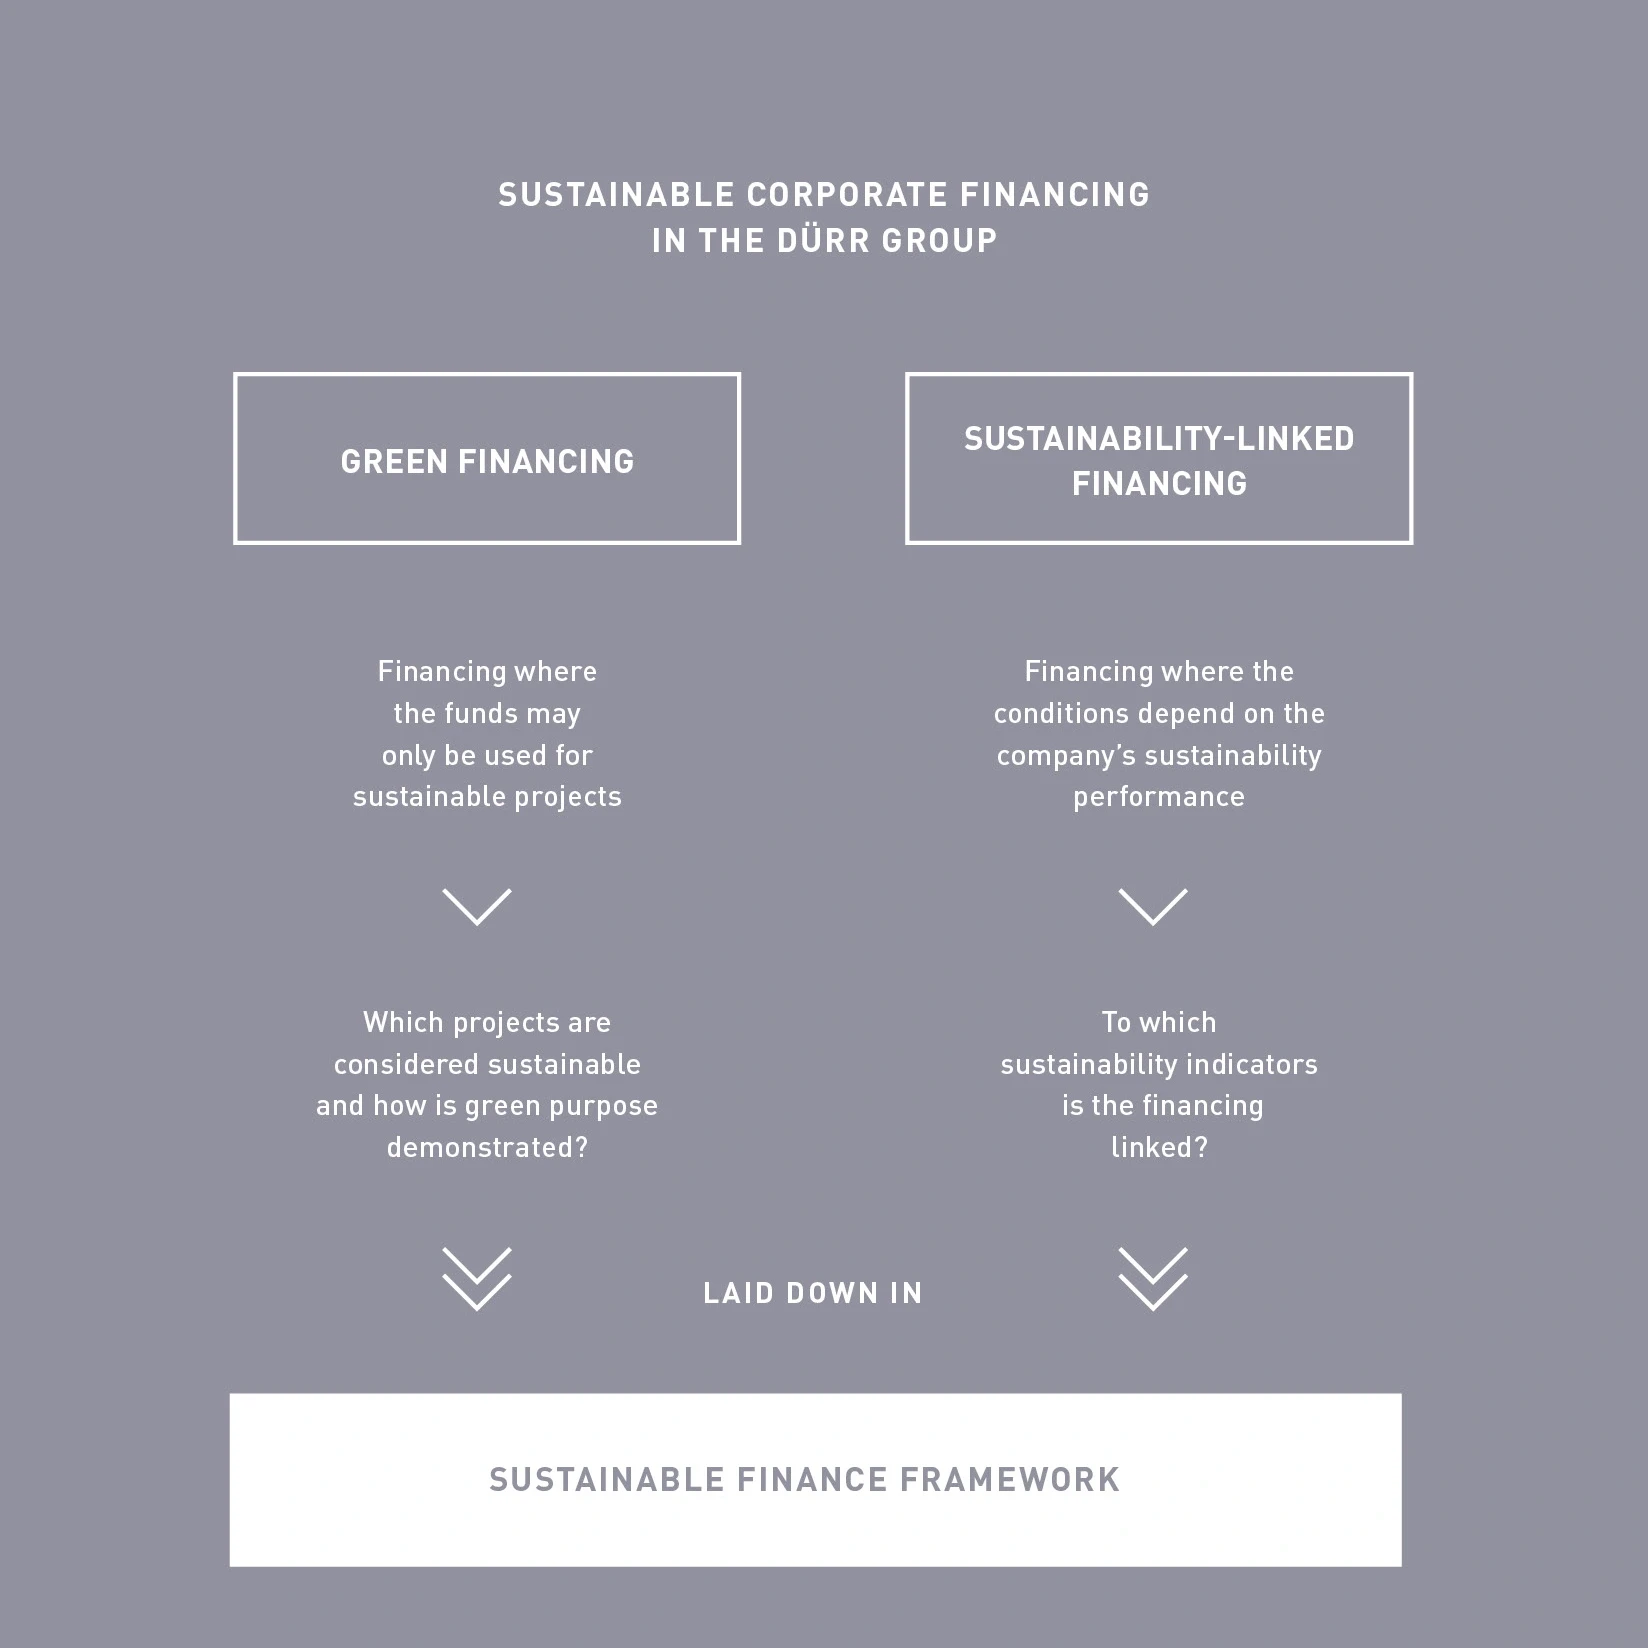 The sustainable finance framework visualized 